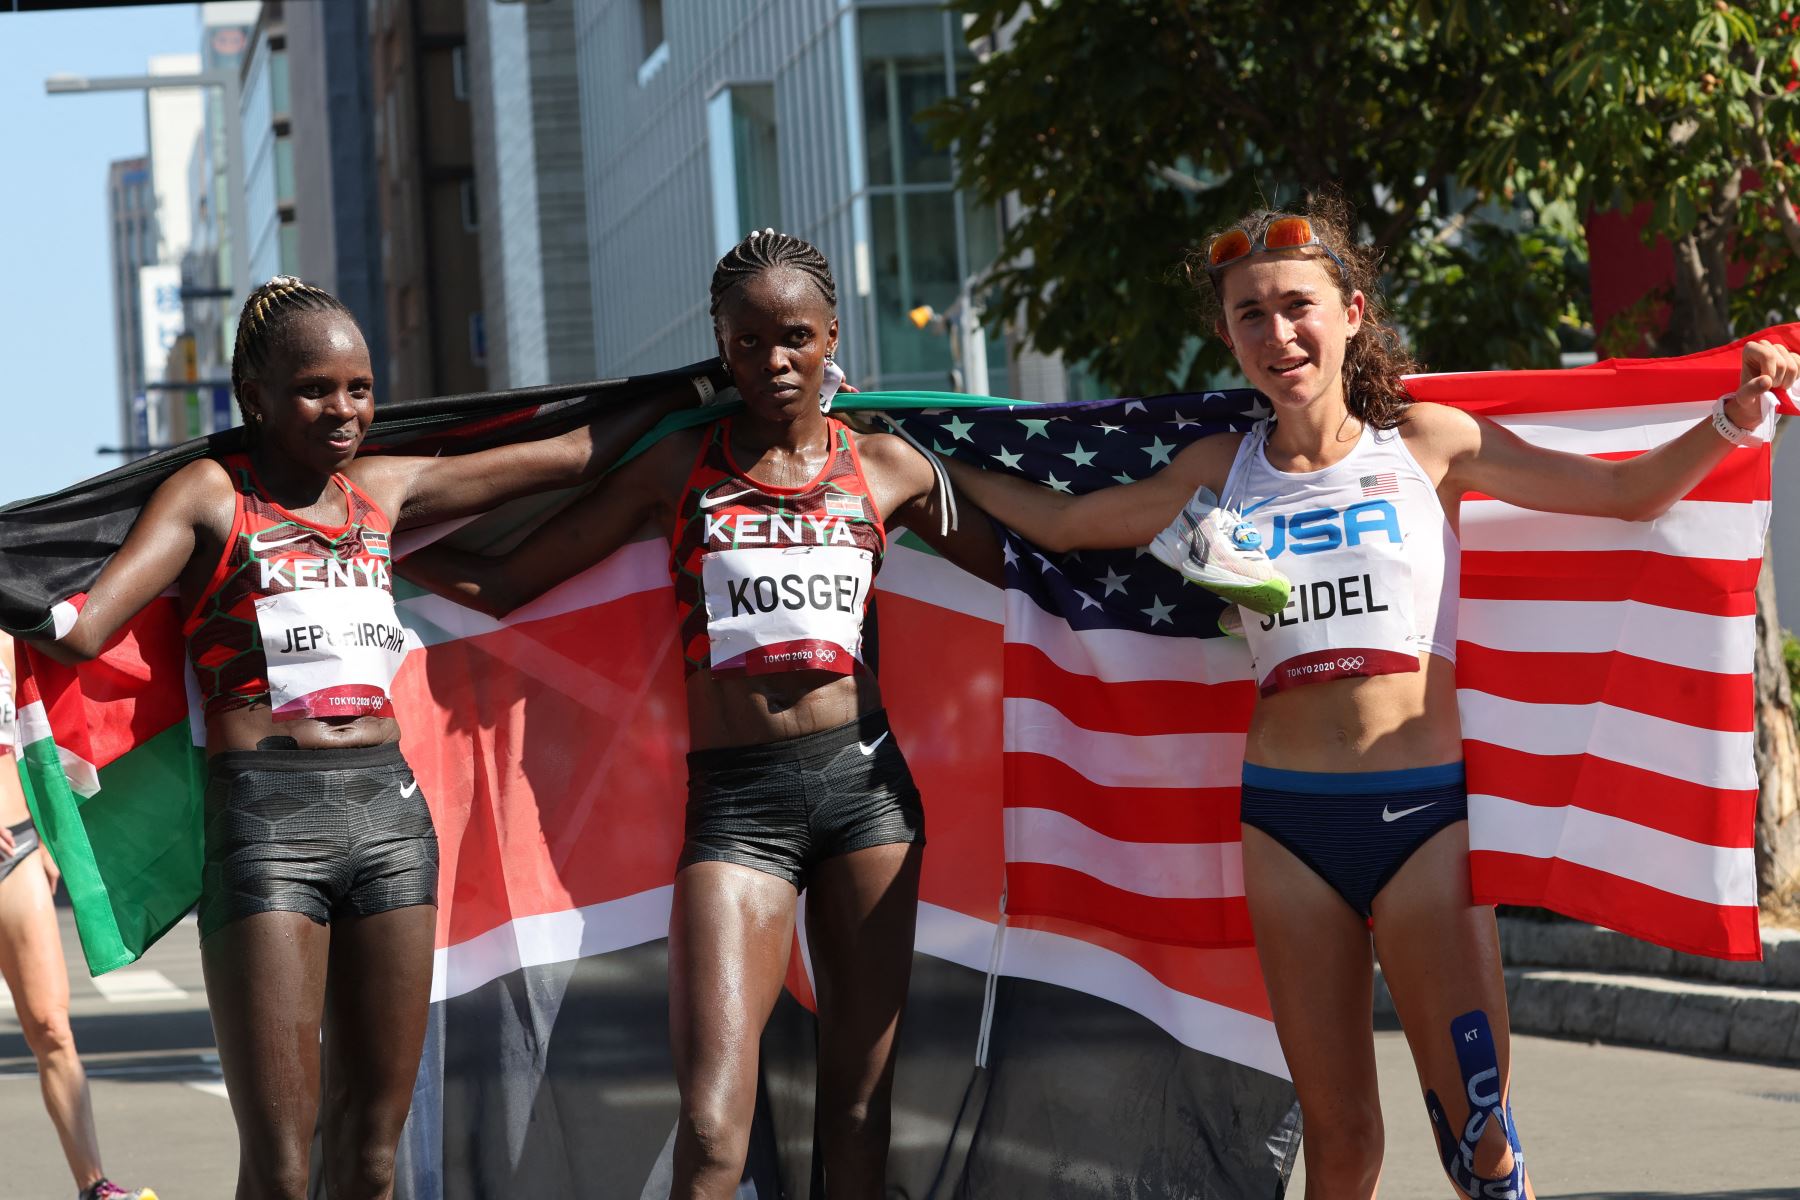 La medallista de oro de Kenia, Peres Jepchirchir, la medallista de plata de Kenia Brigid Kosgei y la medallista de bronce de EE. UU. Molly Seidel celebran después de la final del maratón femenino durante los Juegos Olímpicos de Tokio 2020.
Foto: AFP